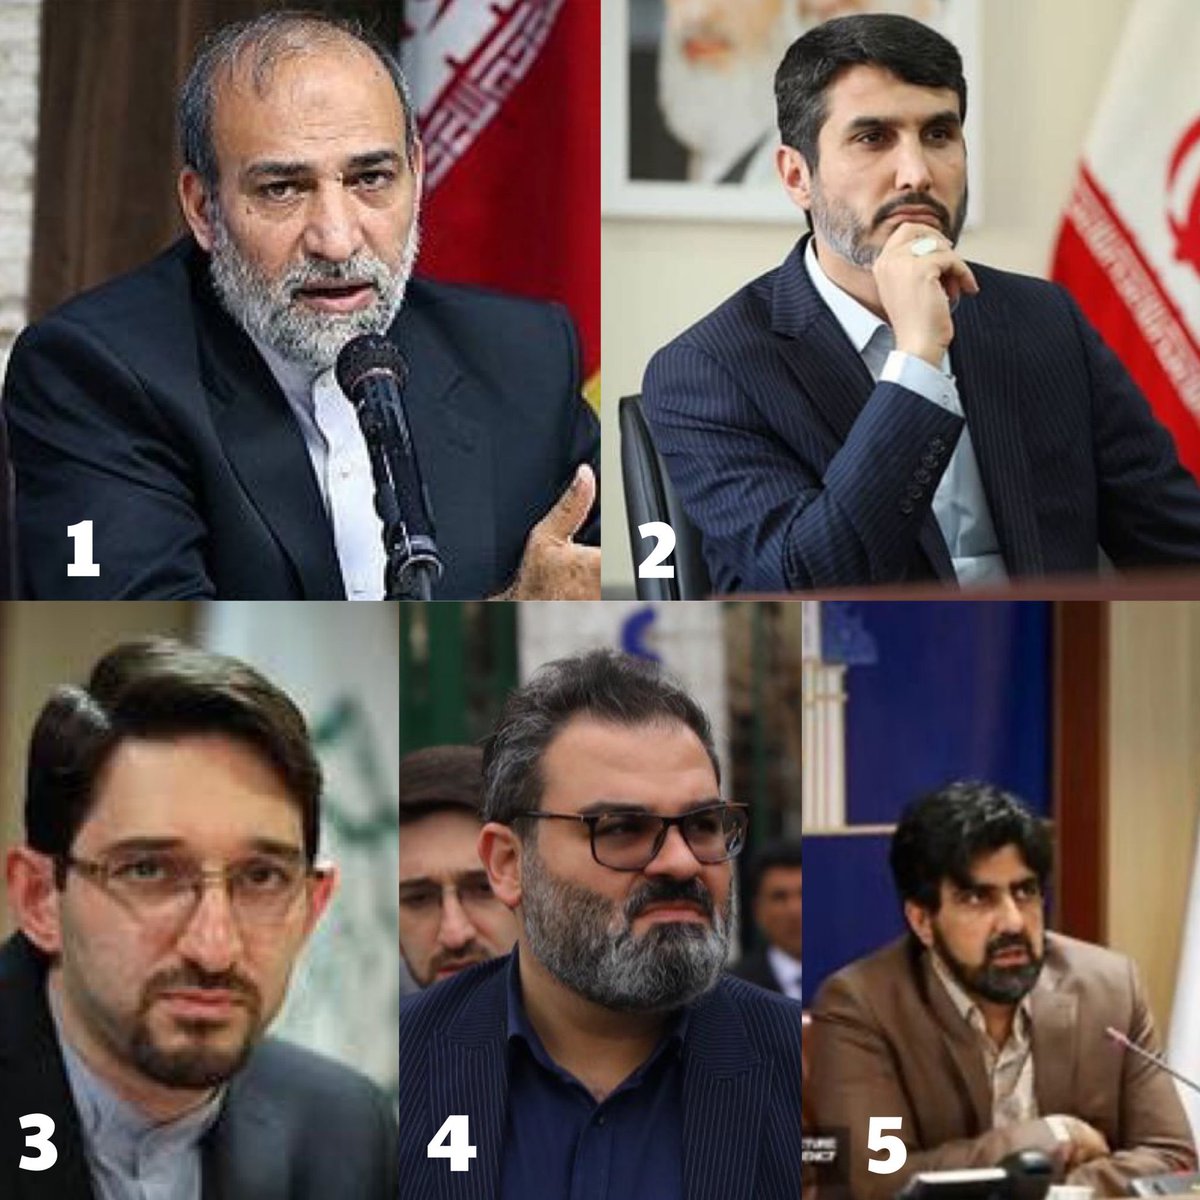 Dit zijn een paar mensen van de delegatie die met Zakani naar Brussel zouden zijn afgereisd.

1)Lotfollah Forouzandeh Dehkordi  Adjunct Financiën en Stedelijke Economie van de stad Teheran. Voormalige ambten: Voormalige vicepresident van de Islamitische Republiek…